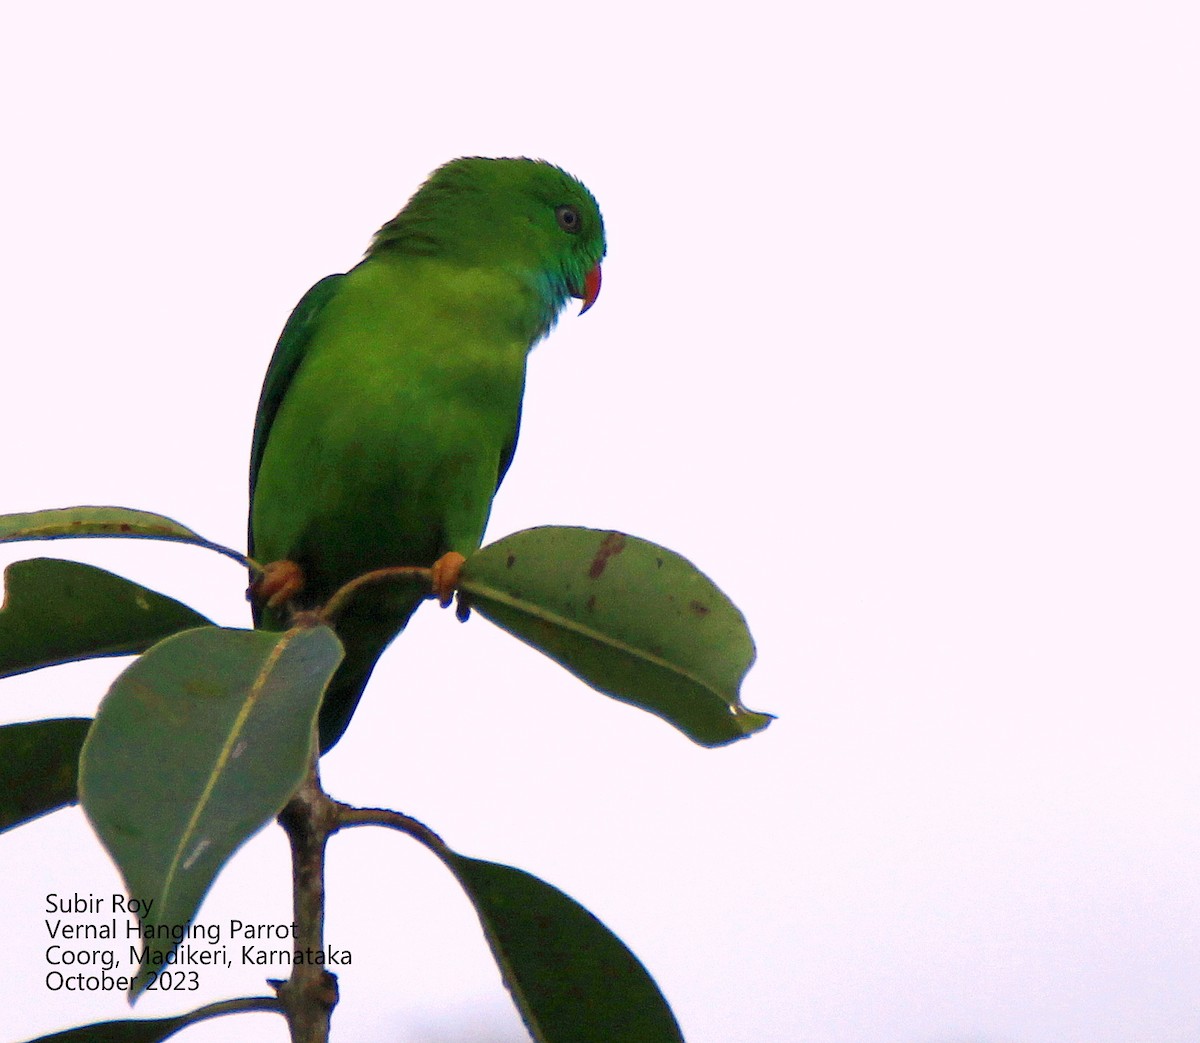 Vernal Hanging-Parrot - Subir Roy